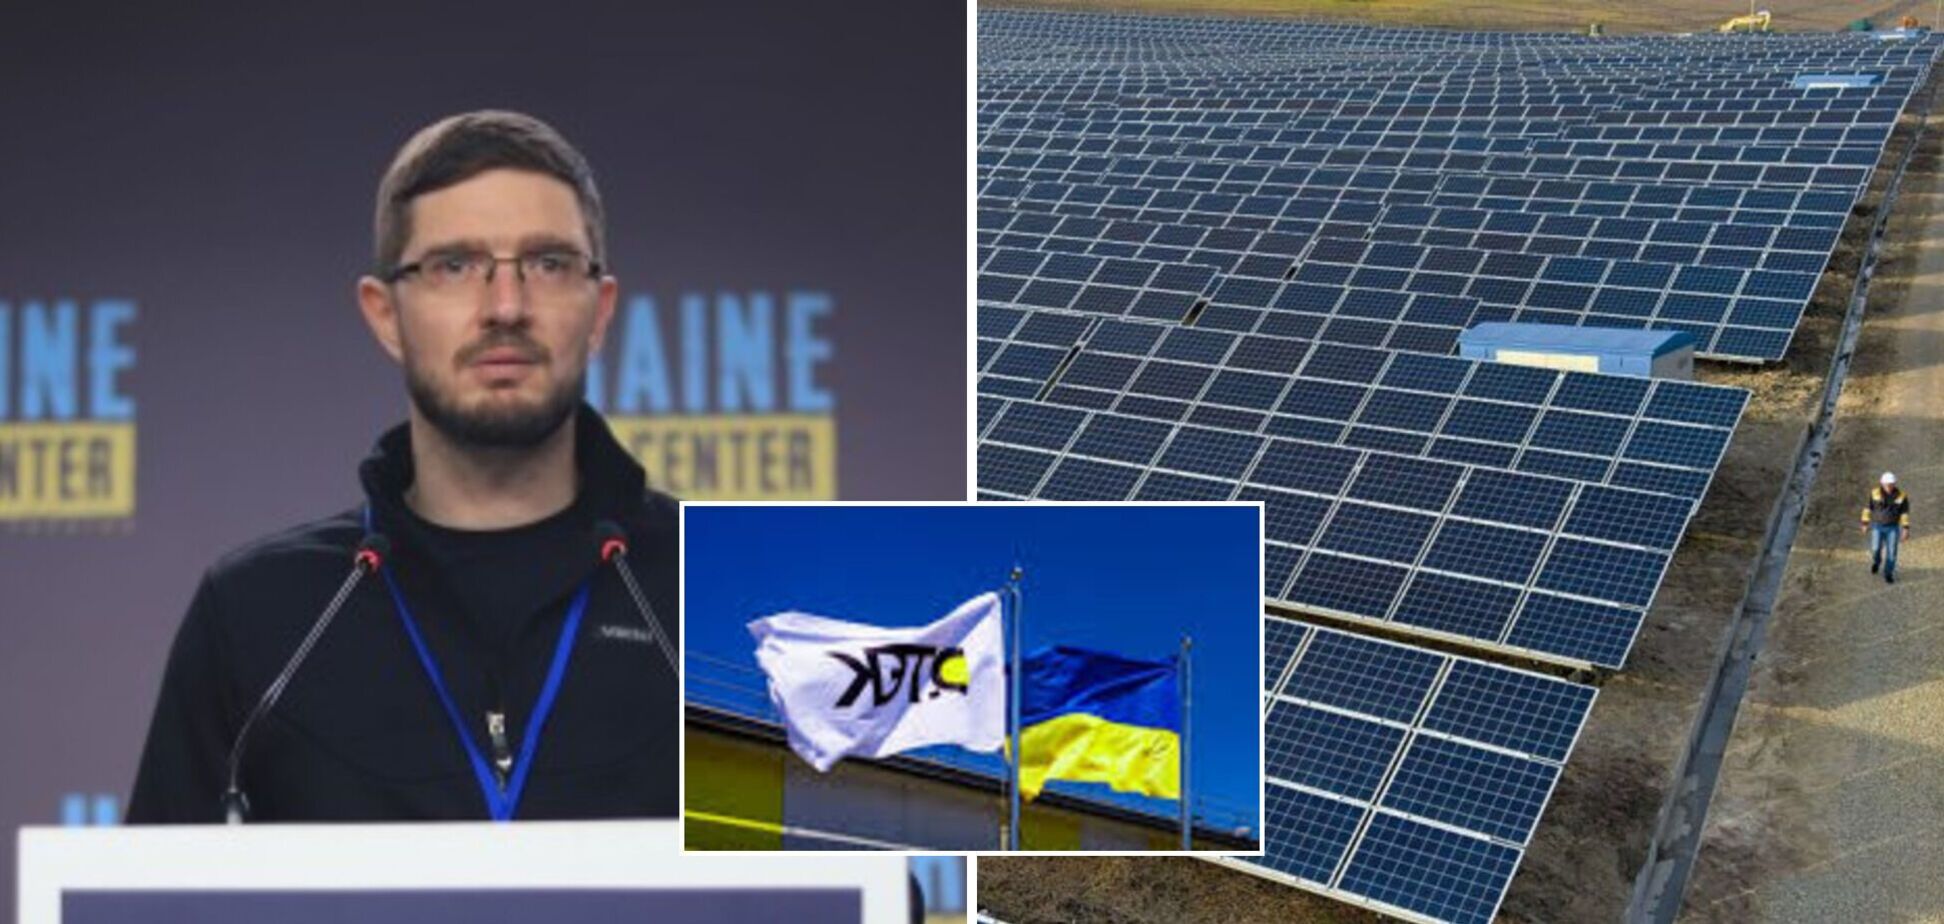 Інтеграція в європейську енергосистему дає можливість залучати додаткові інвестиції в Україну, – ДТЕК